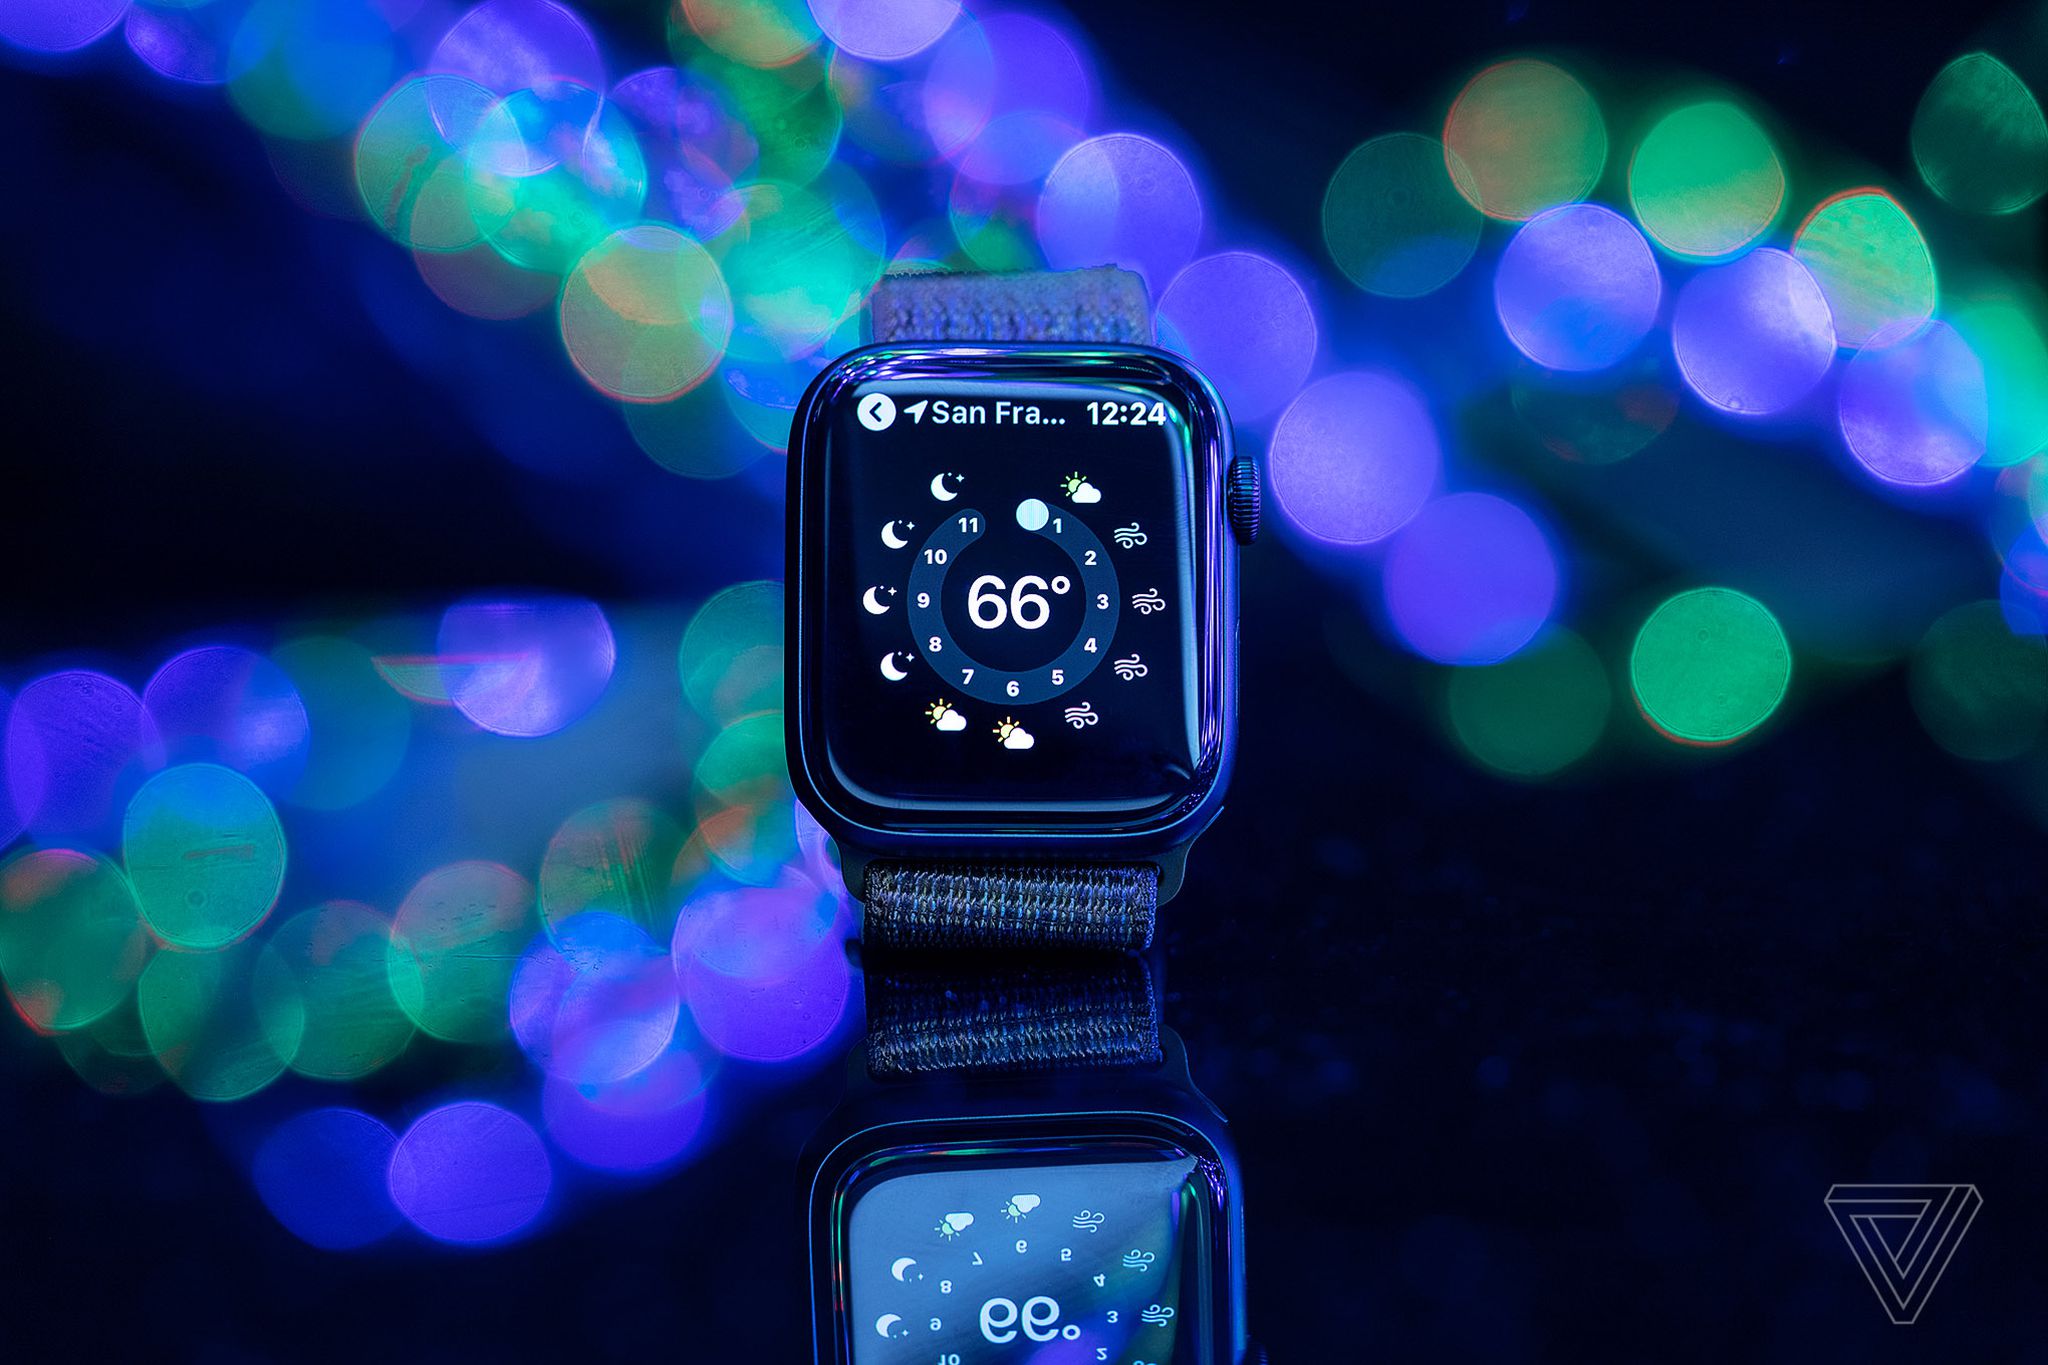 Бесплатная заставка на смарт часы. Смарт часы эпл вотч. Smart watch Apple 6. Смарт часы вотч 5. Apple watch Series 5.